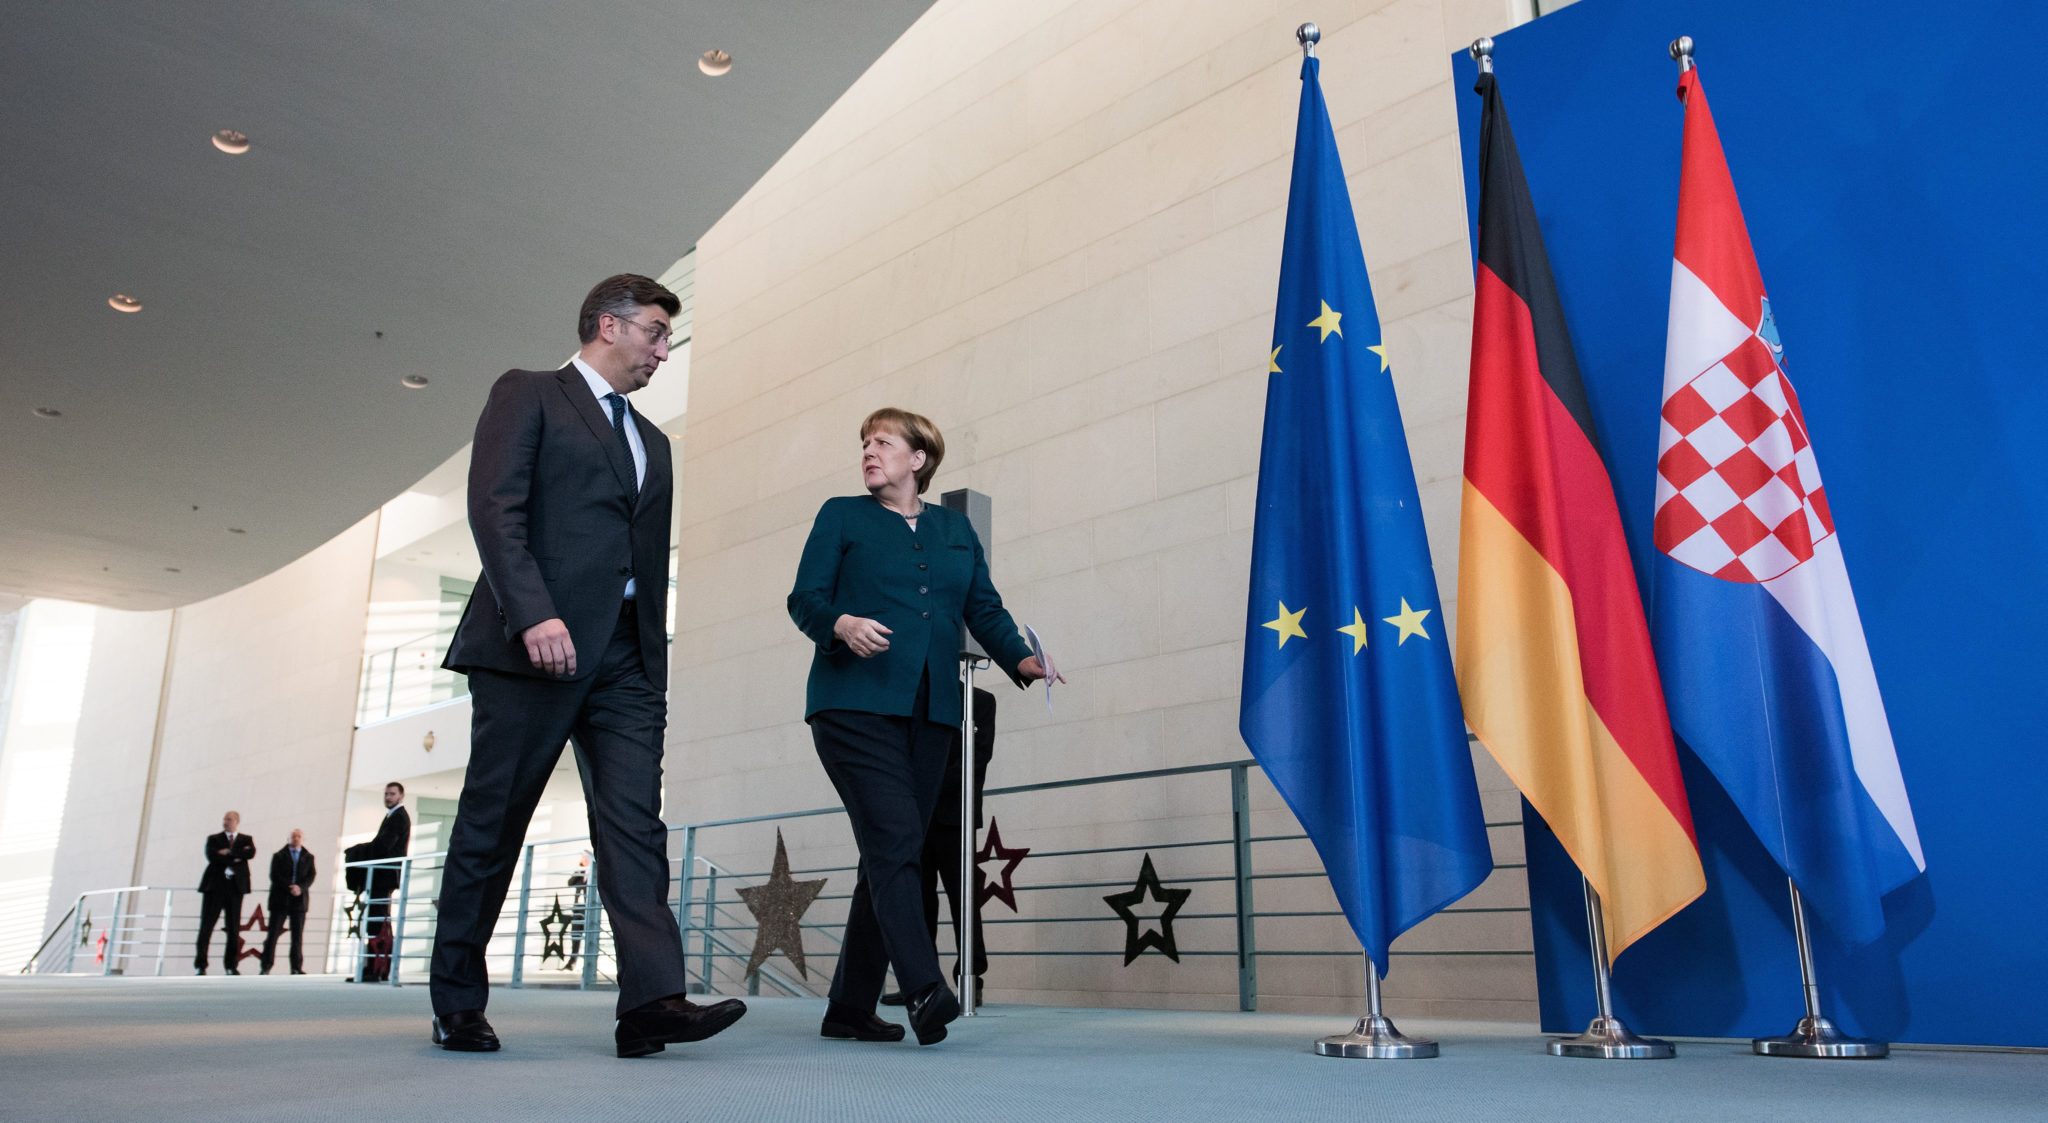 Niemcy: wizyta chorwackiego premiera Andreja Plenkovica w Berlinie (foto. PAP/EPA/BERND VON JUTRCZENKA)